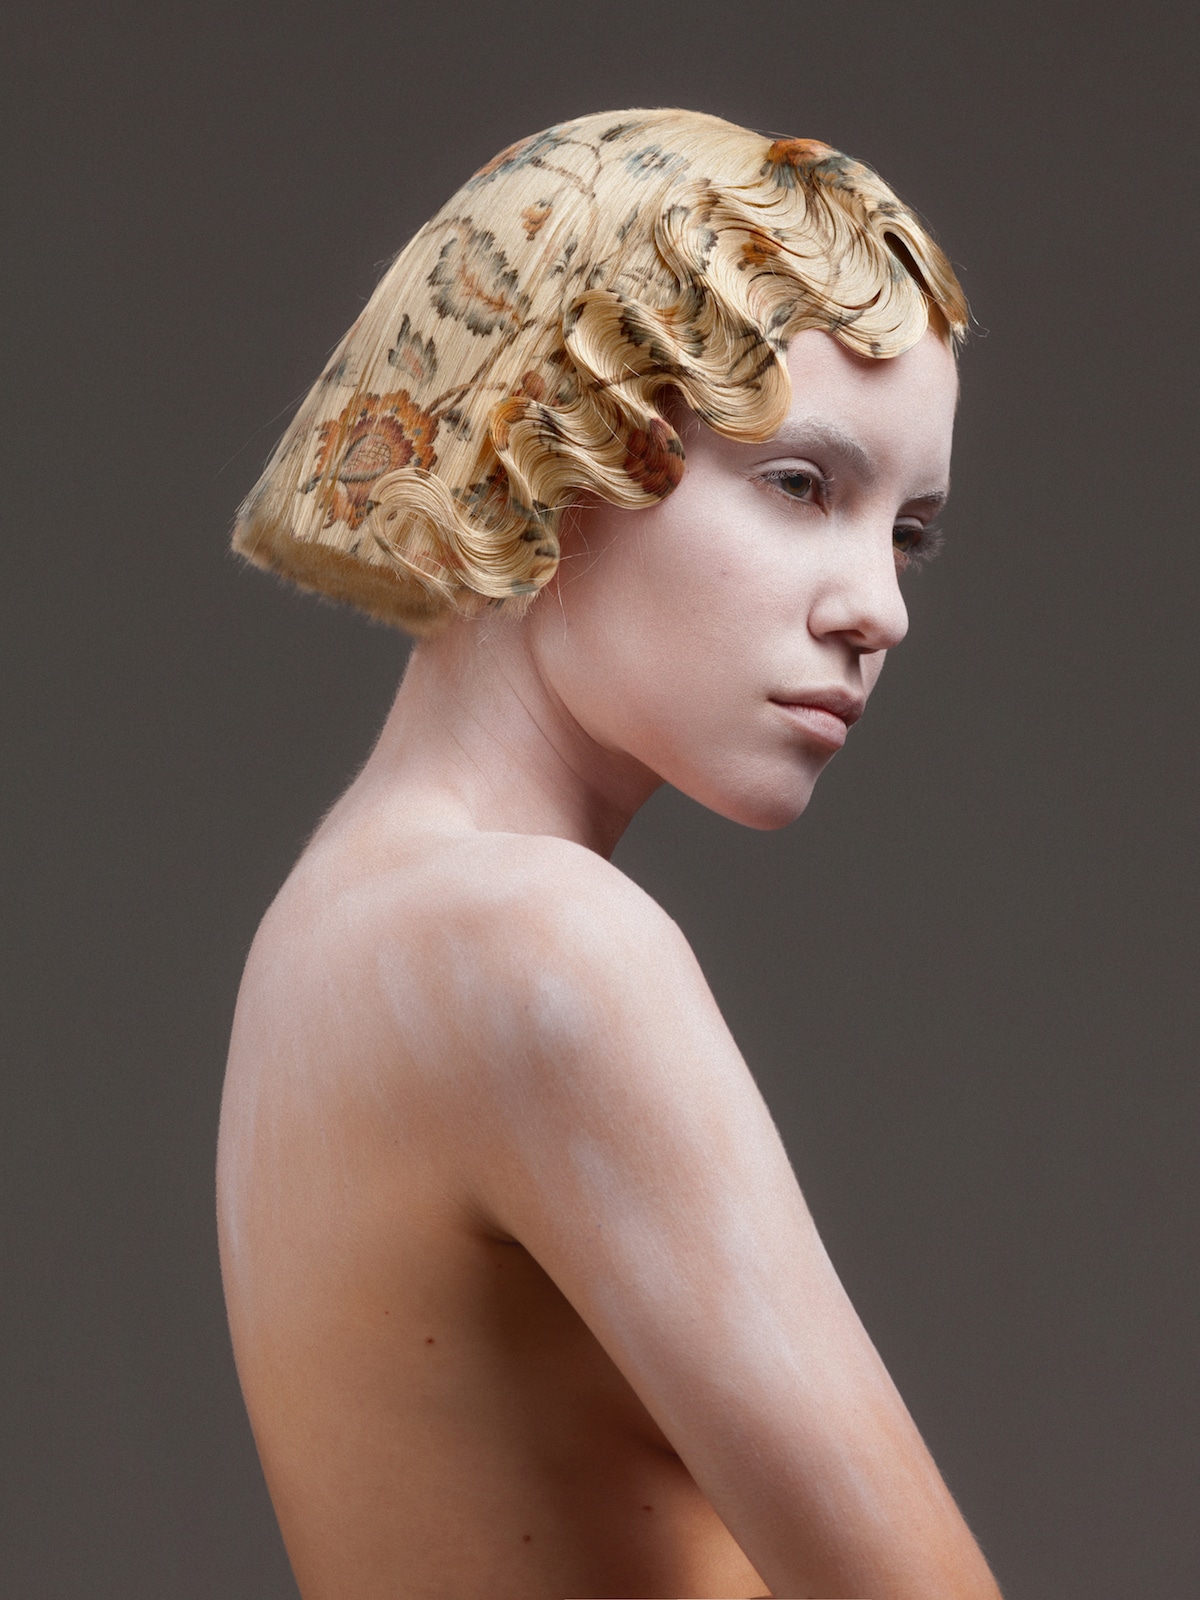 cabello con flores impresas de Alexis Ferrer